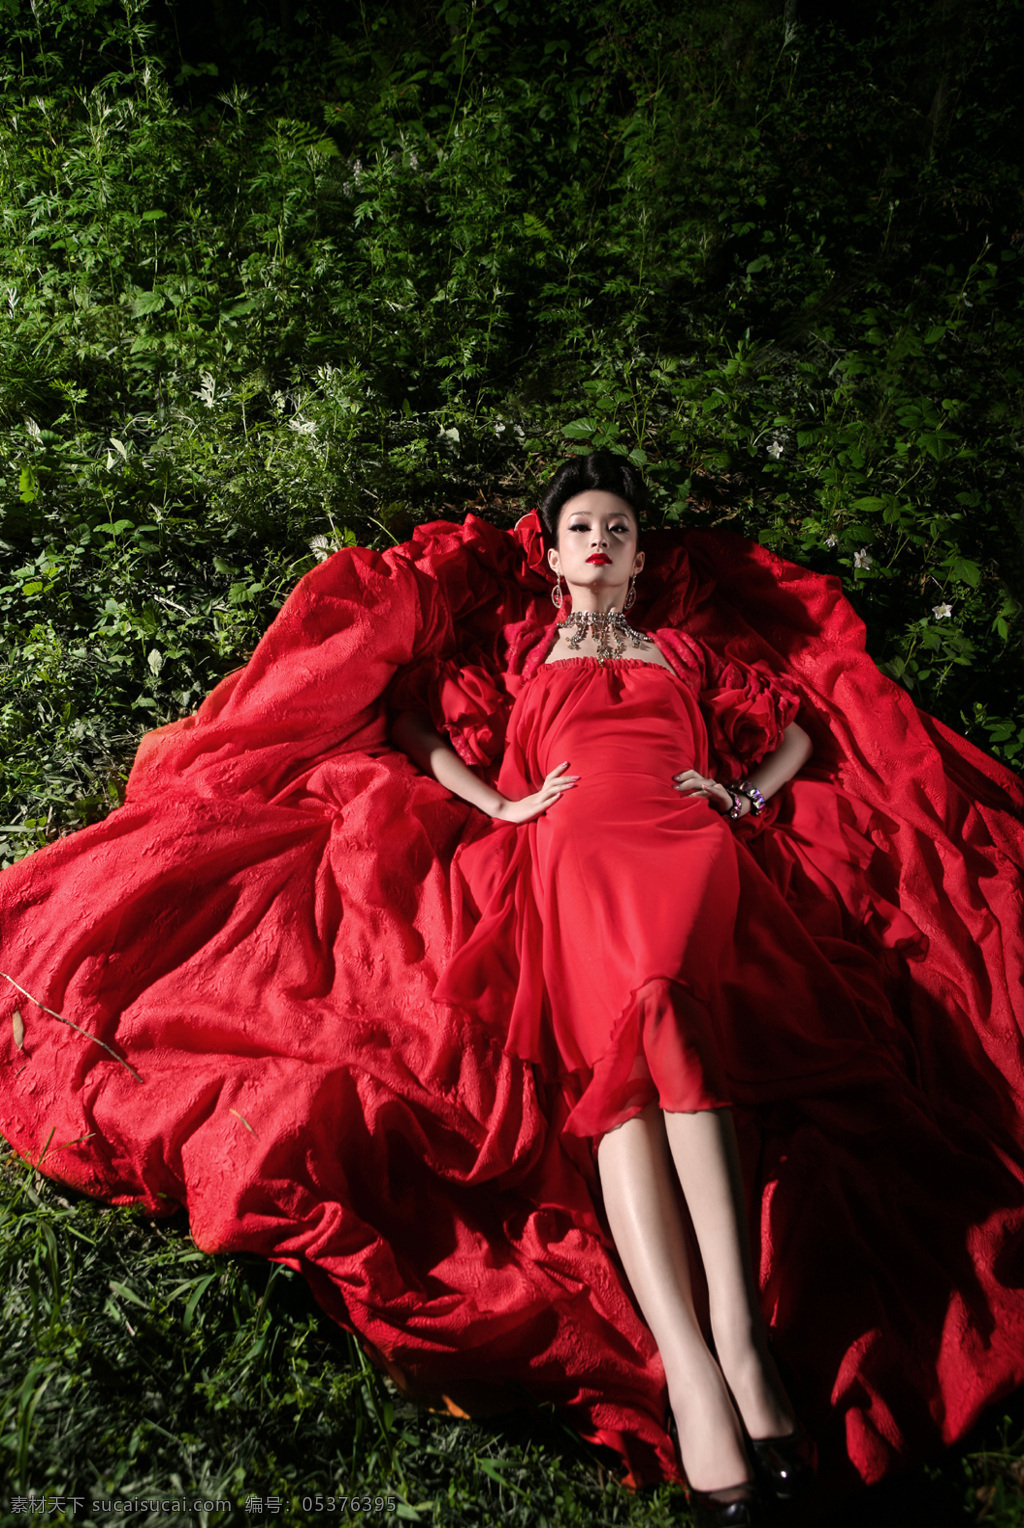 穿红装的美女 红礼服 红唇 美女 躺 绿草地 宝石 首饰 人物图库 人物摄影 摄影图库